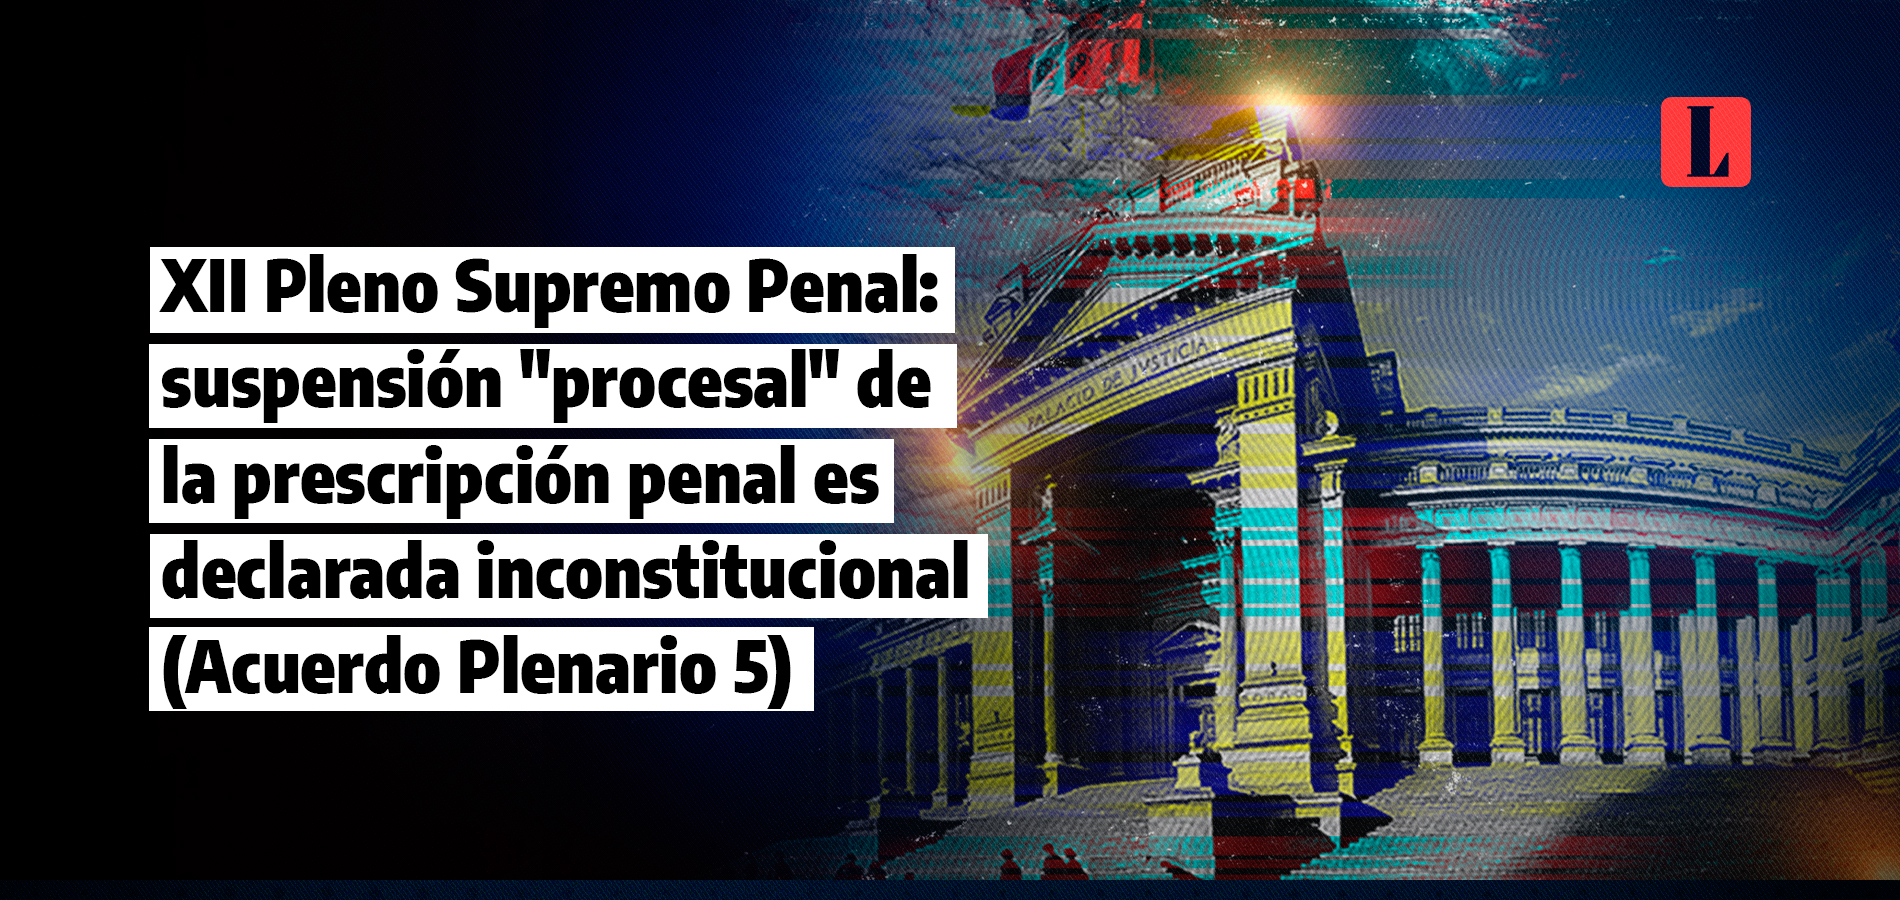 XII Pleno Supremo Penal: Declaran inconstitucional la Ley N° 31751 sobre la suspensión «procesal» de la prescripción penal (Acuerdo Plenario 5)